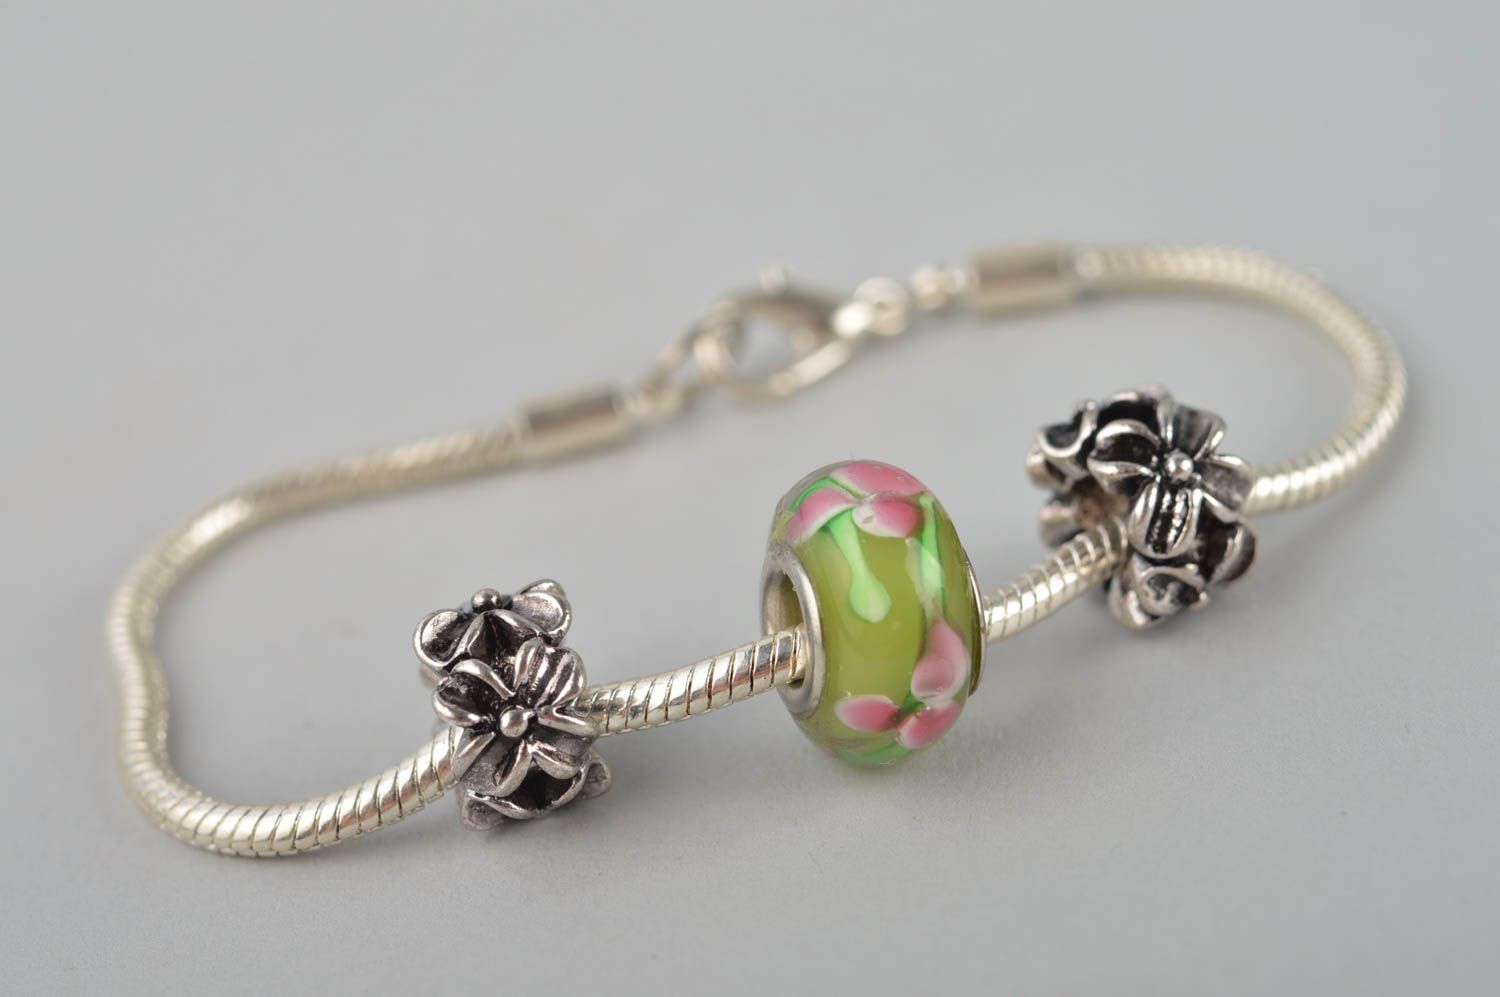 Metal wrist bracelet beaded stylish bracelet gift for her stylish jewelry photo 4